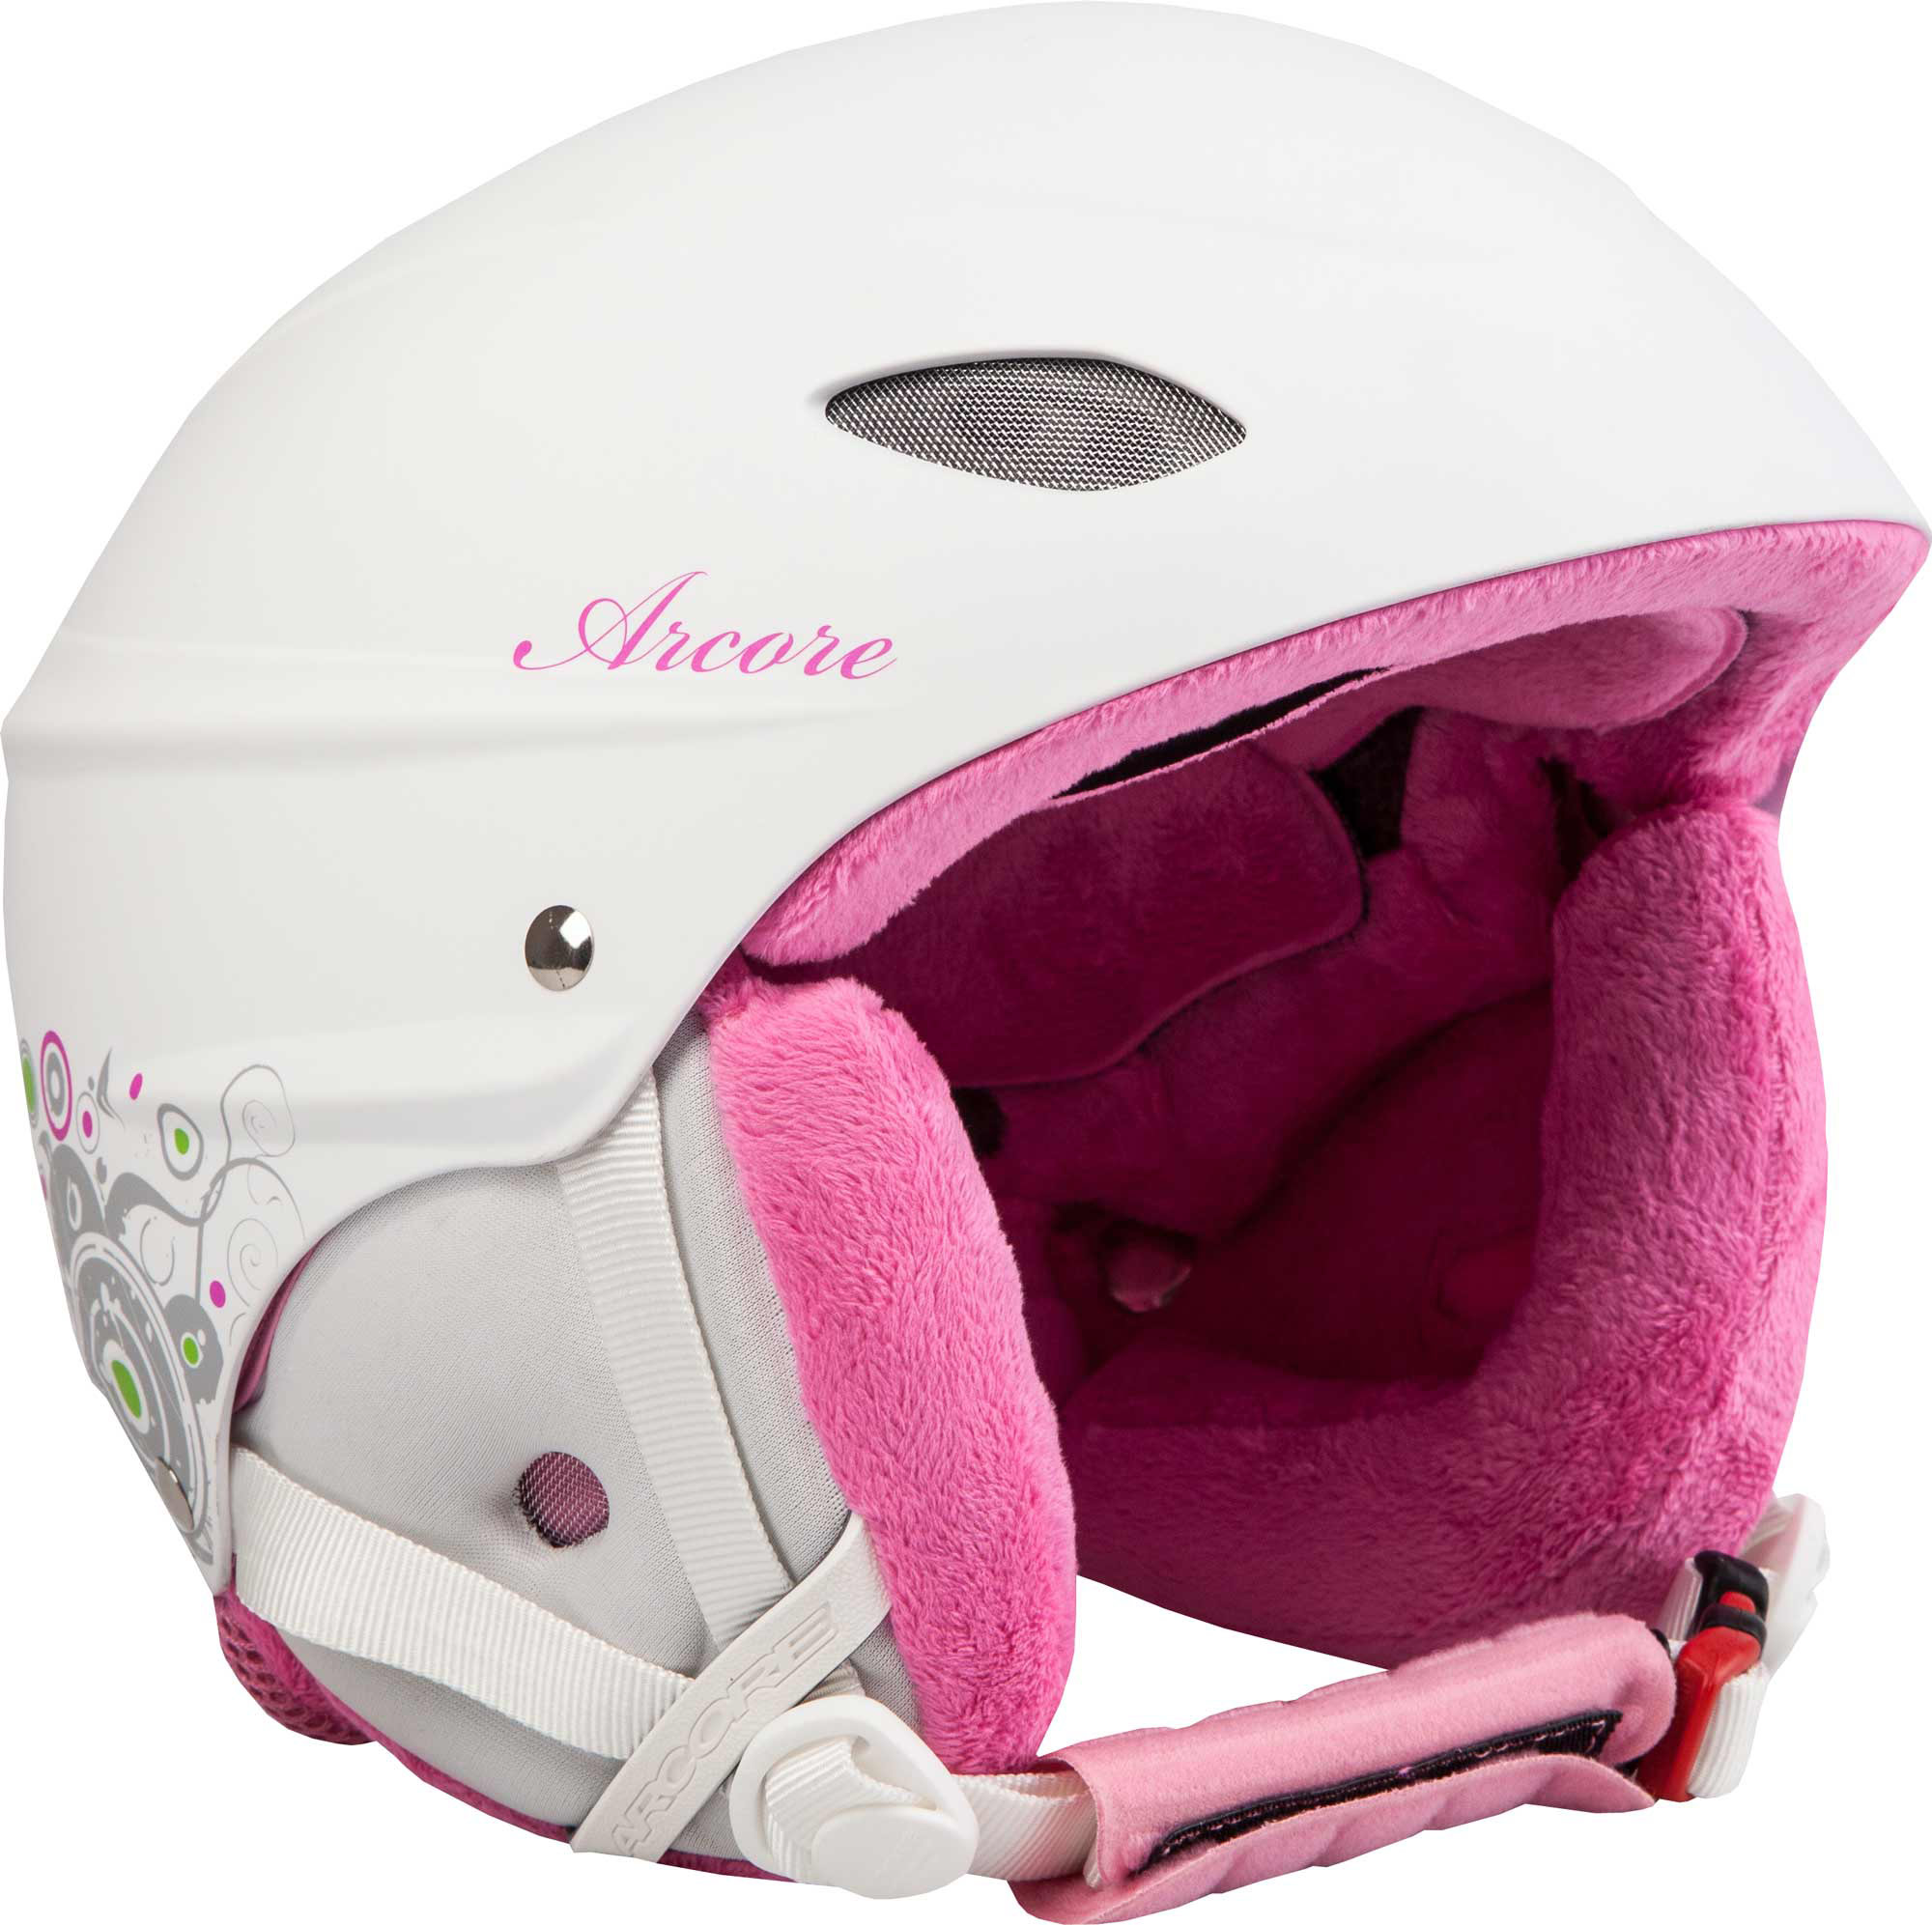 VOX MATT - Ski Helmet